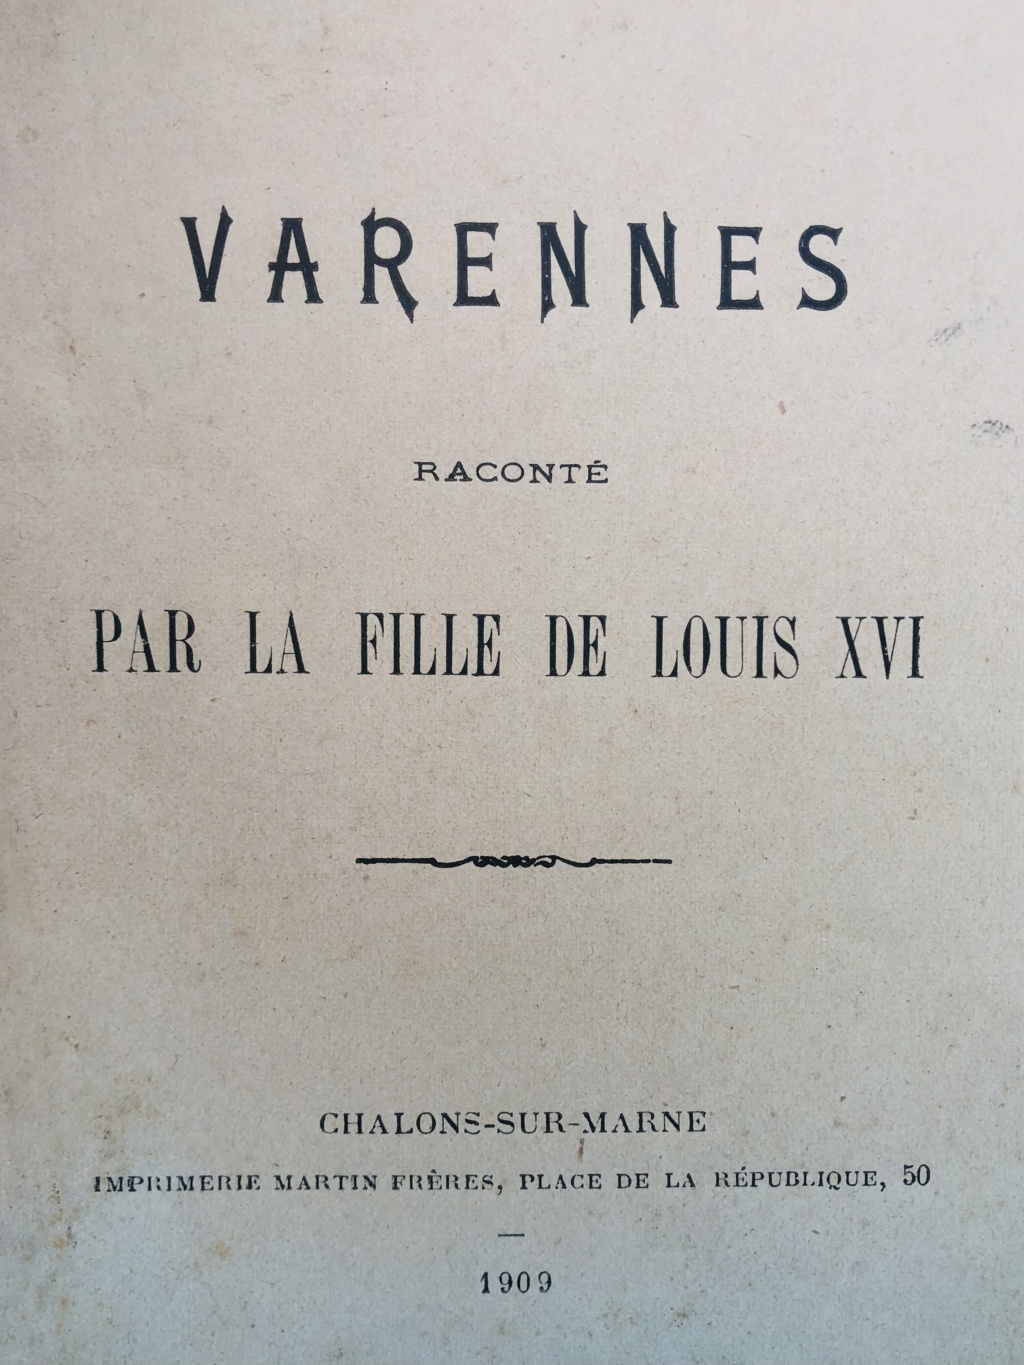 Mémoire et journal de Marie-Thérèse-Charlotte de France, duchesse d'Angoulême - Page 2 793c3410